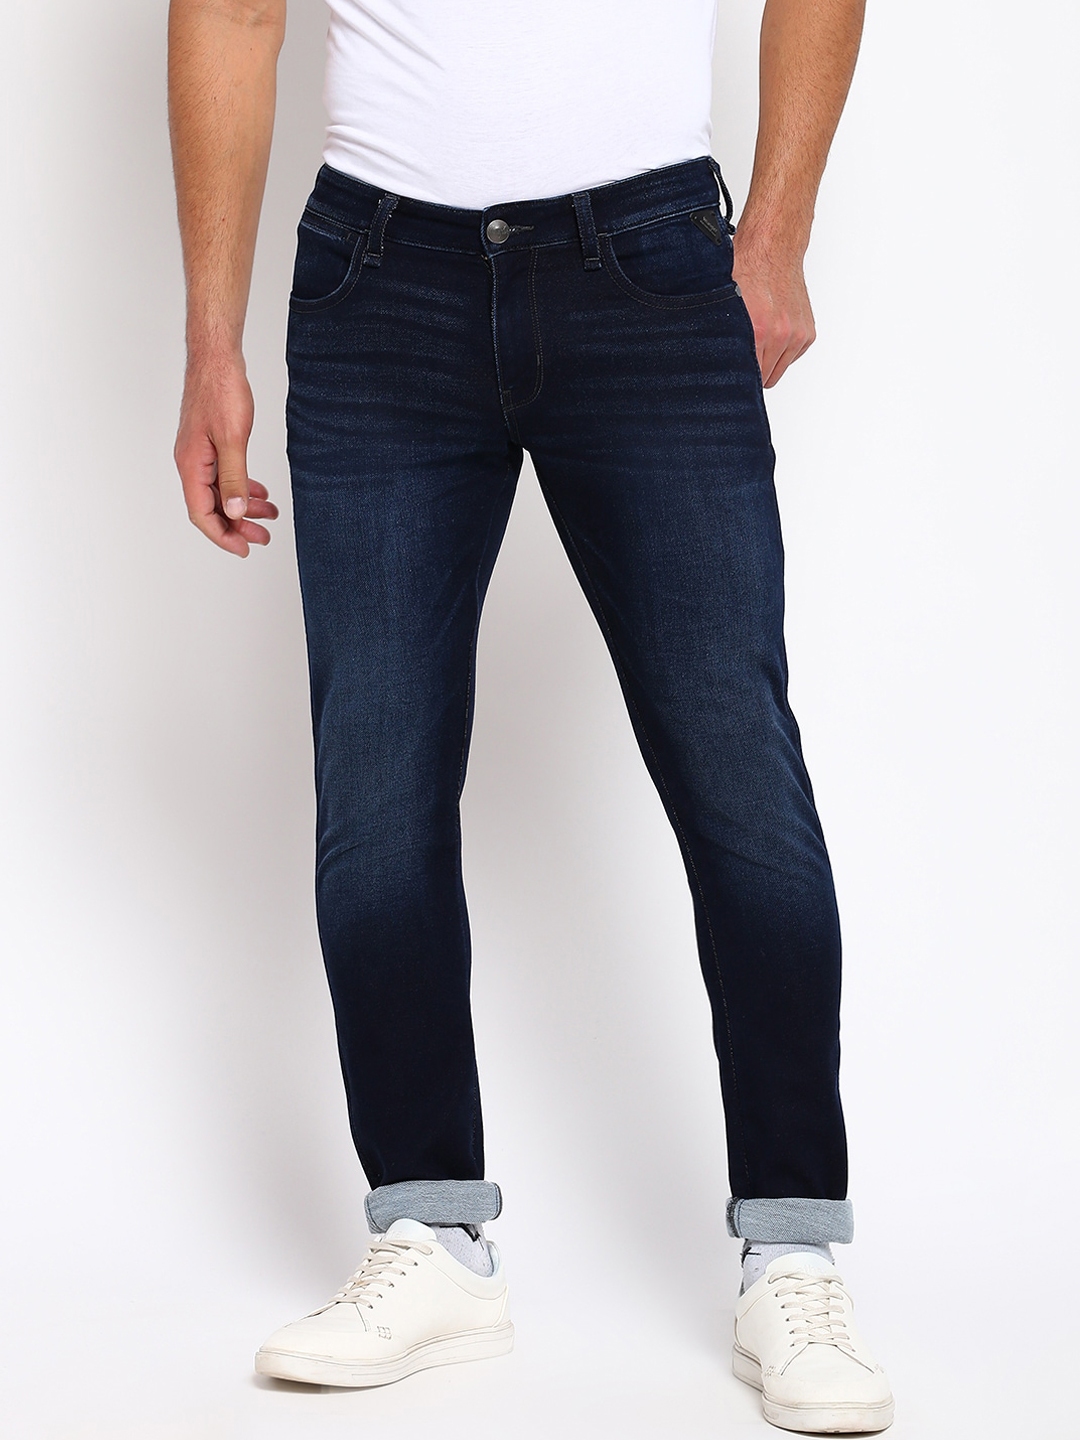 Buy Wrangler Men Blue Skinny Fit Light Fade Jeans - Jeans for Men ...